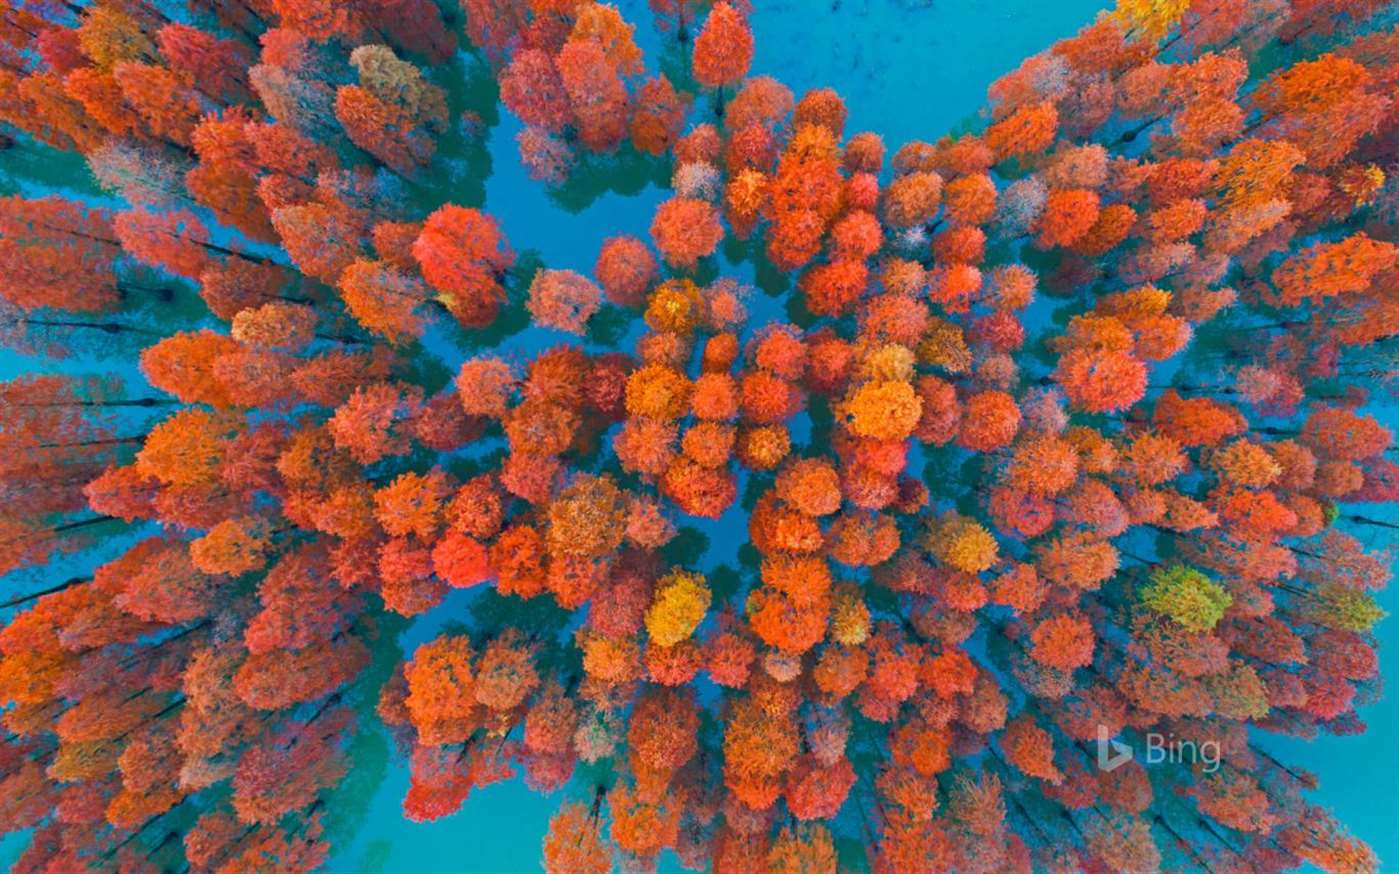 bing wallpaper,orange,blue,coral,coral reef,organism